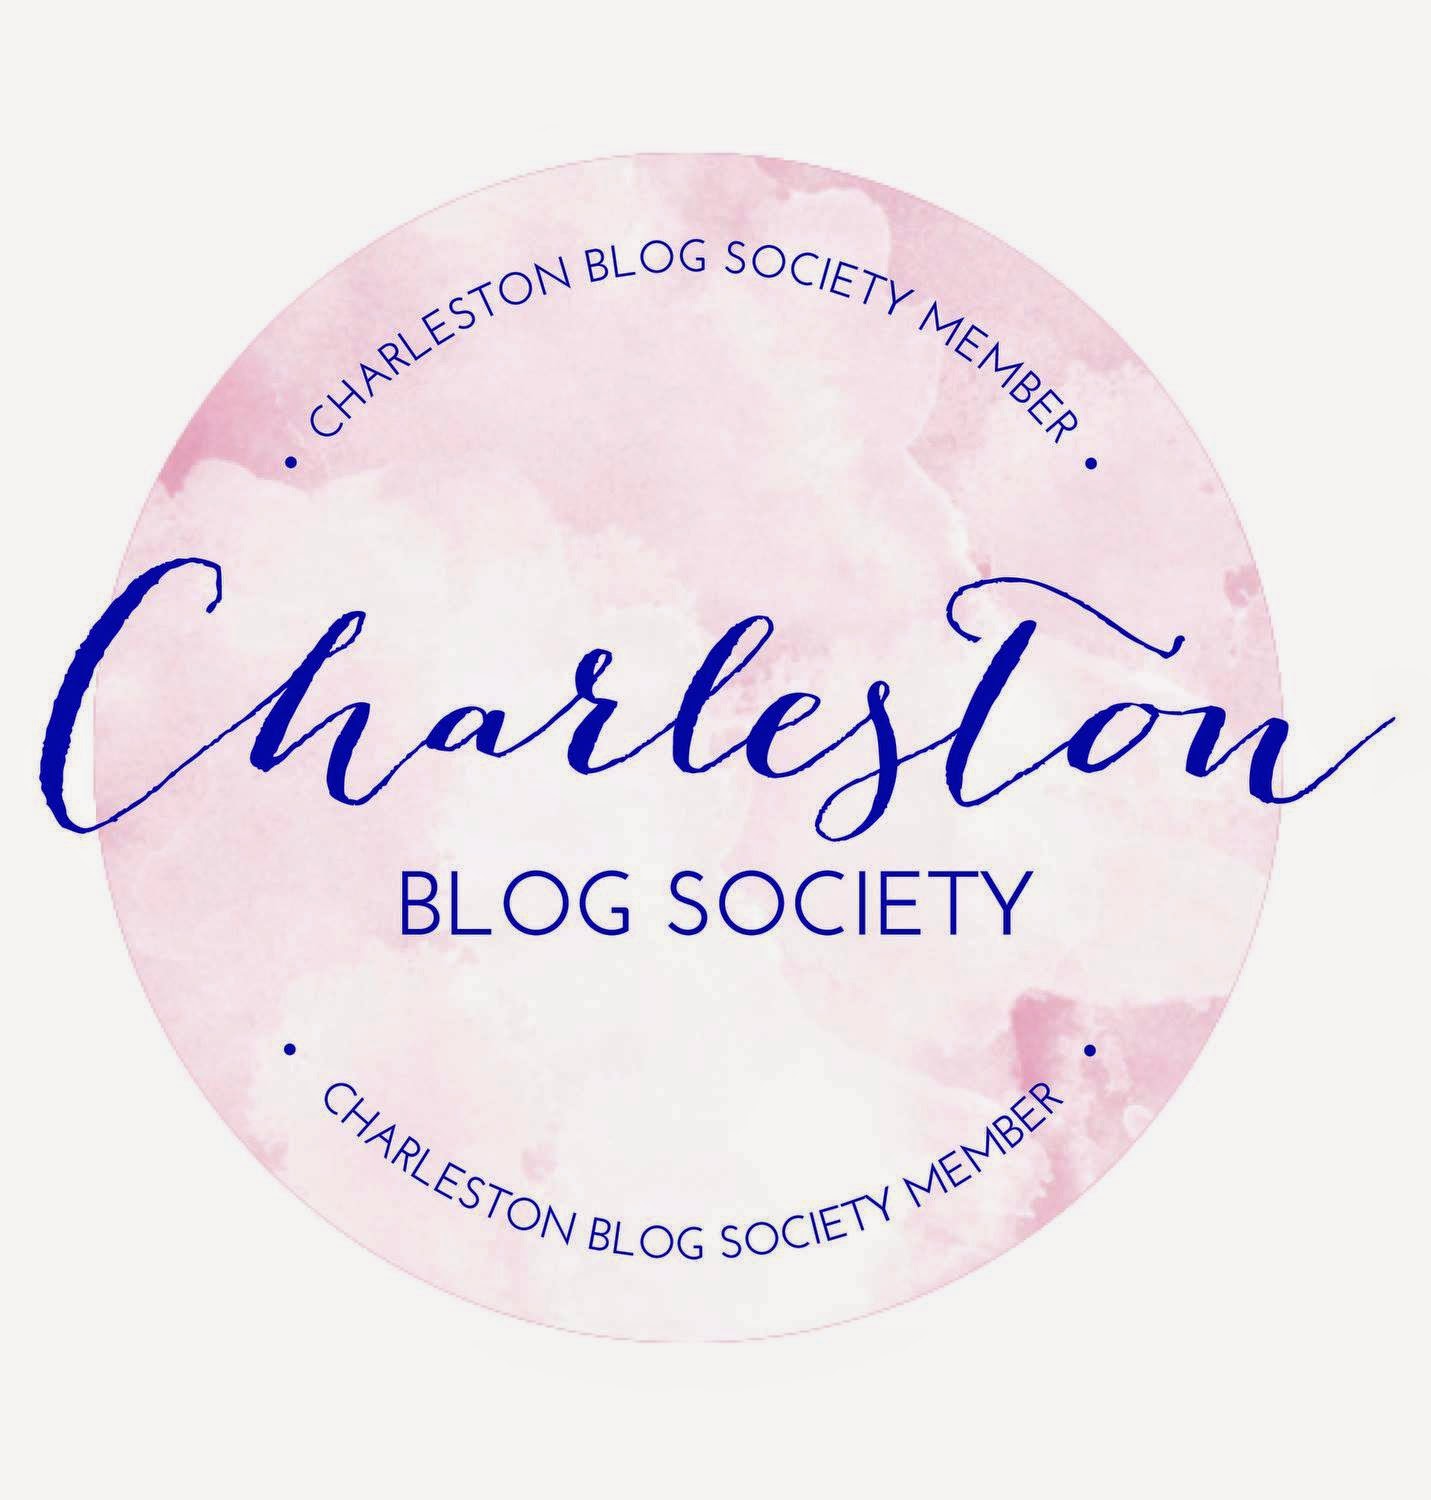 Charleston Blog Society